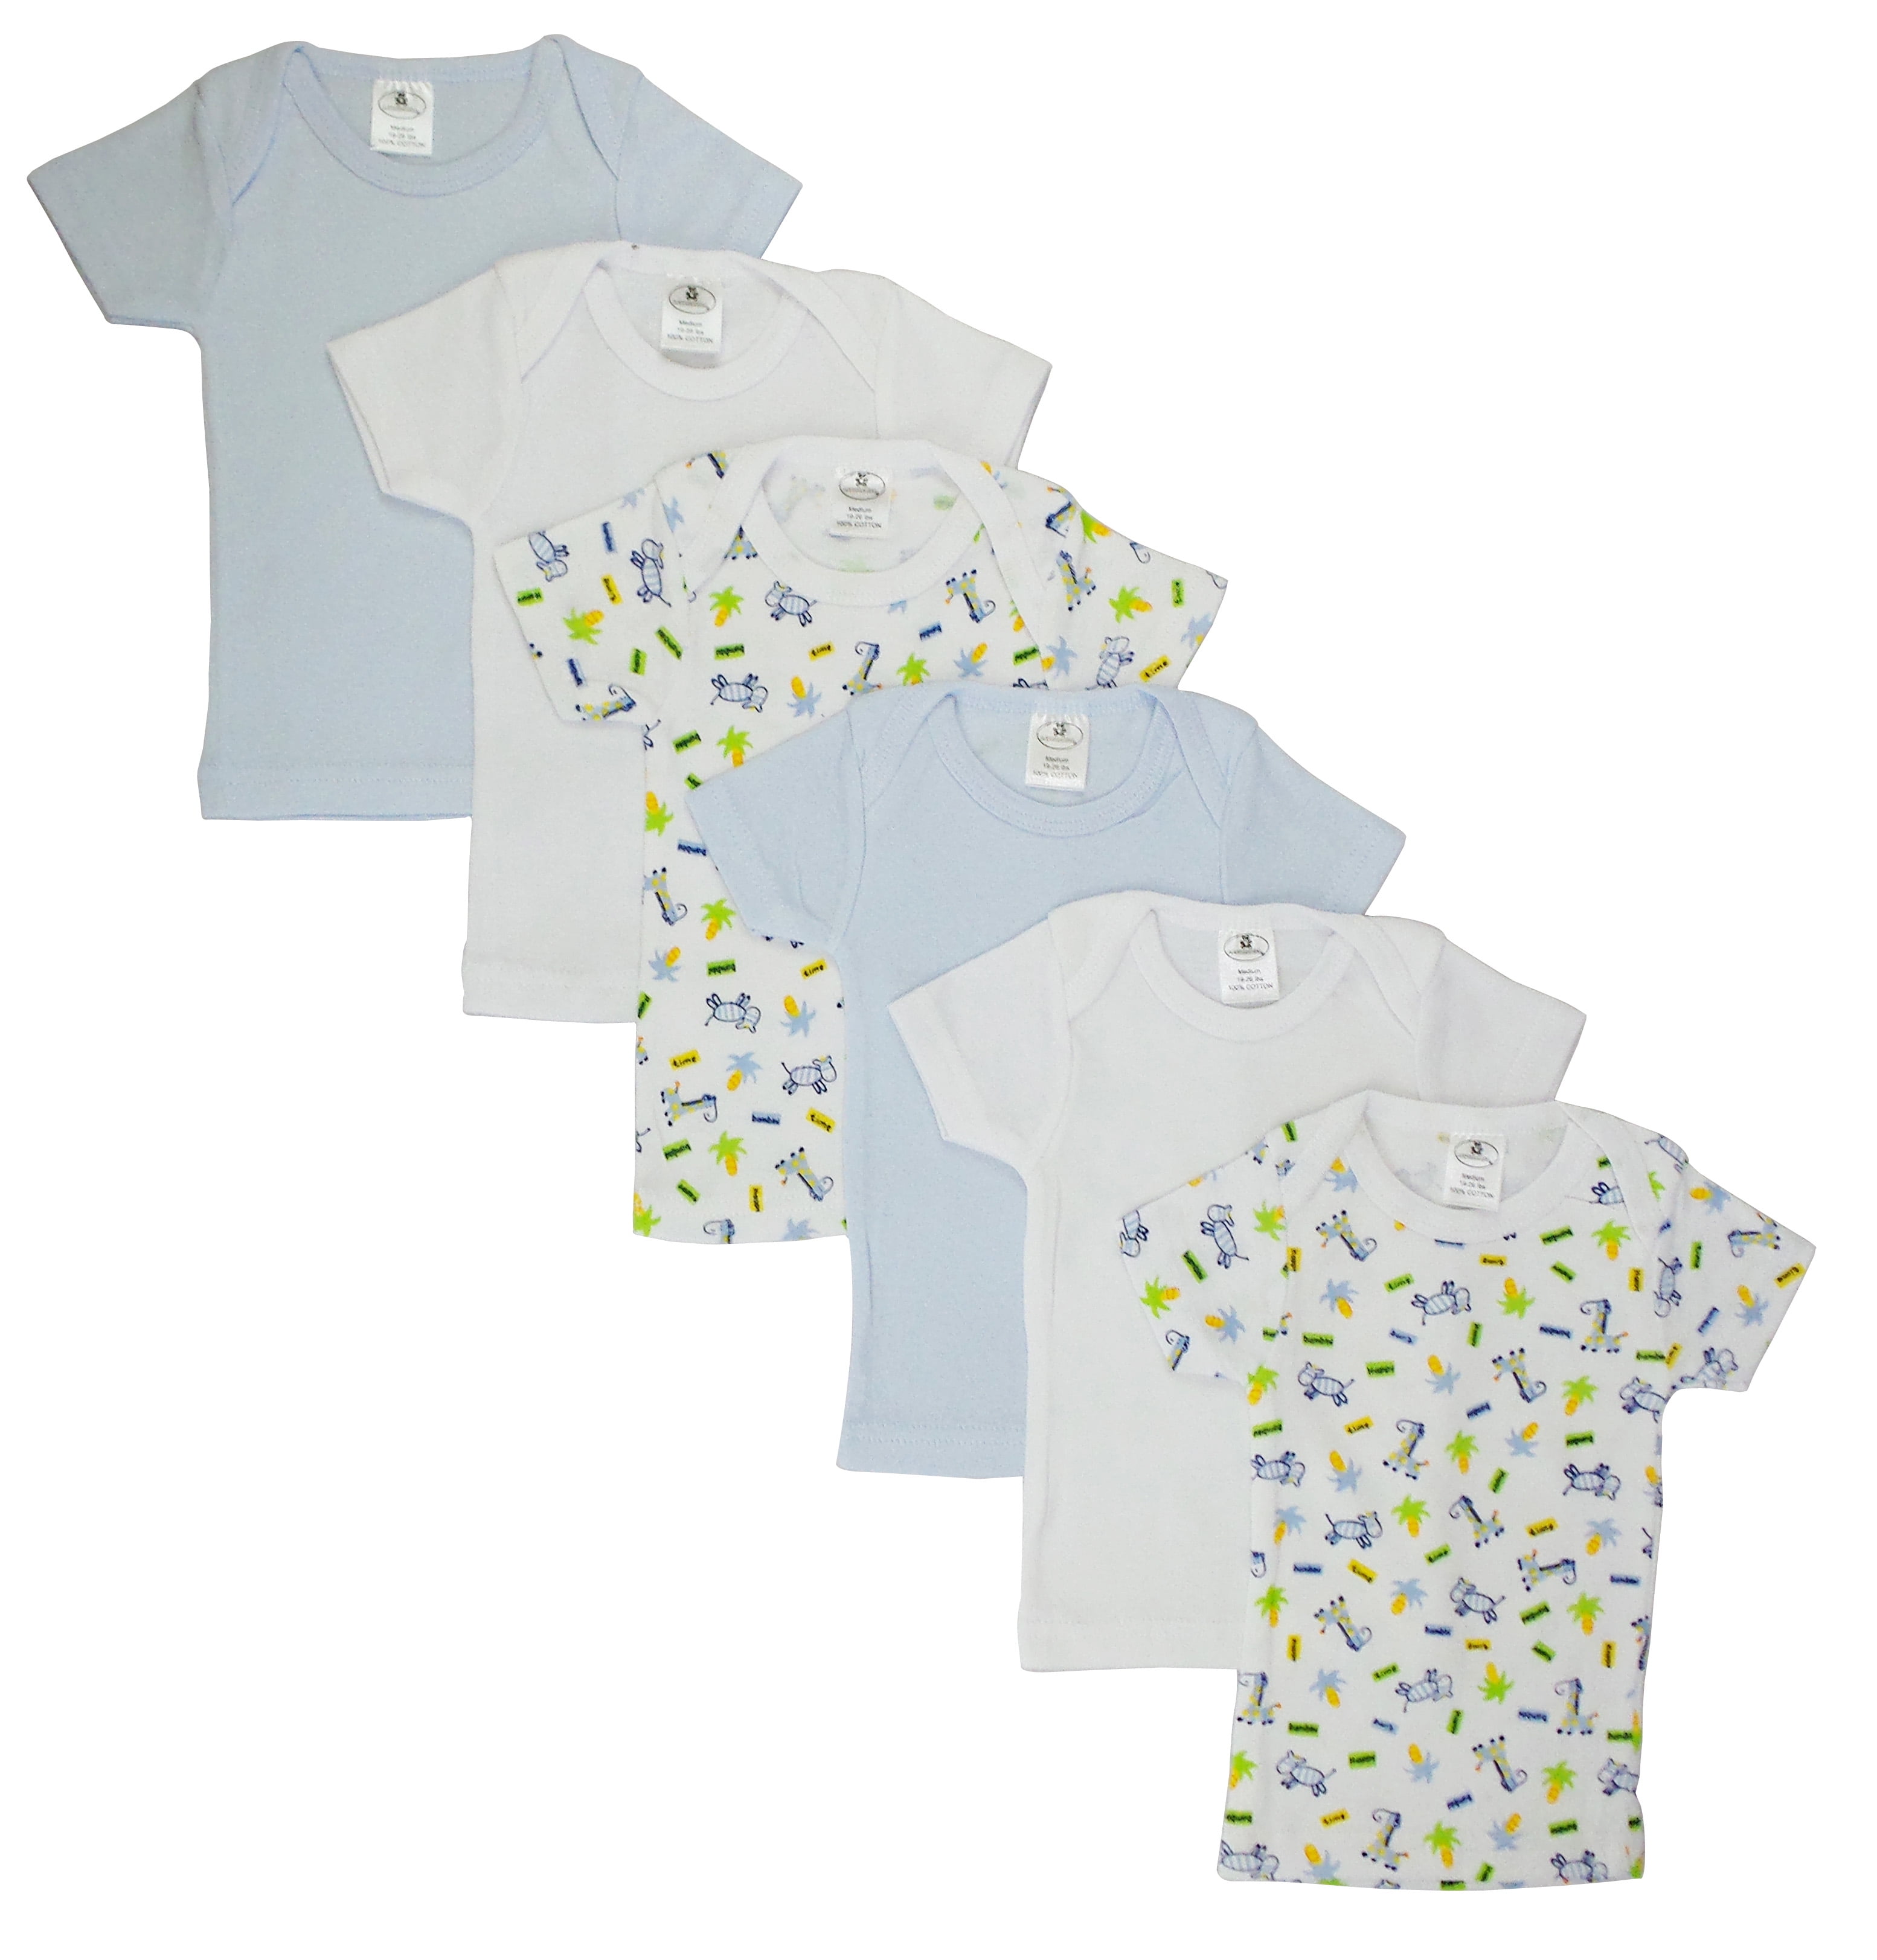 Cs-058m-058m Girls Pastel Variety Short Sleeve Lap T-shirts, Blue & White - Medium